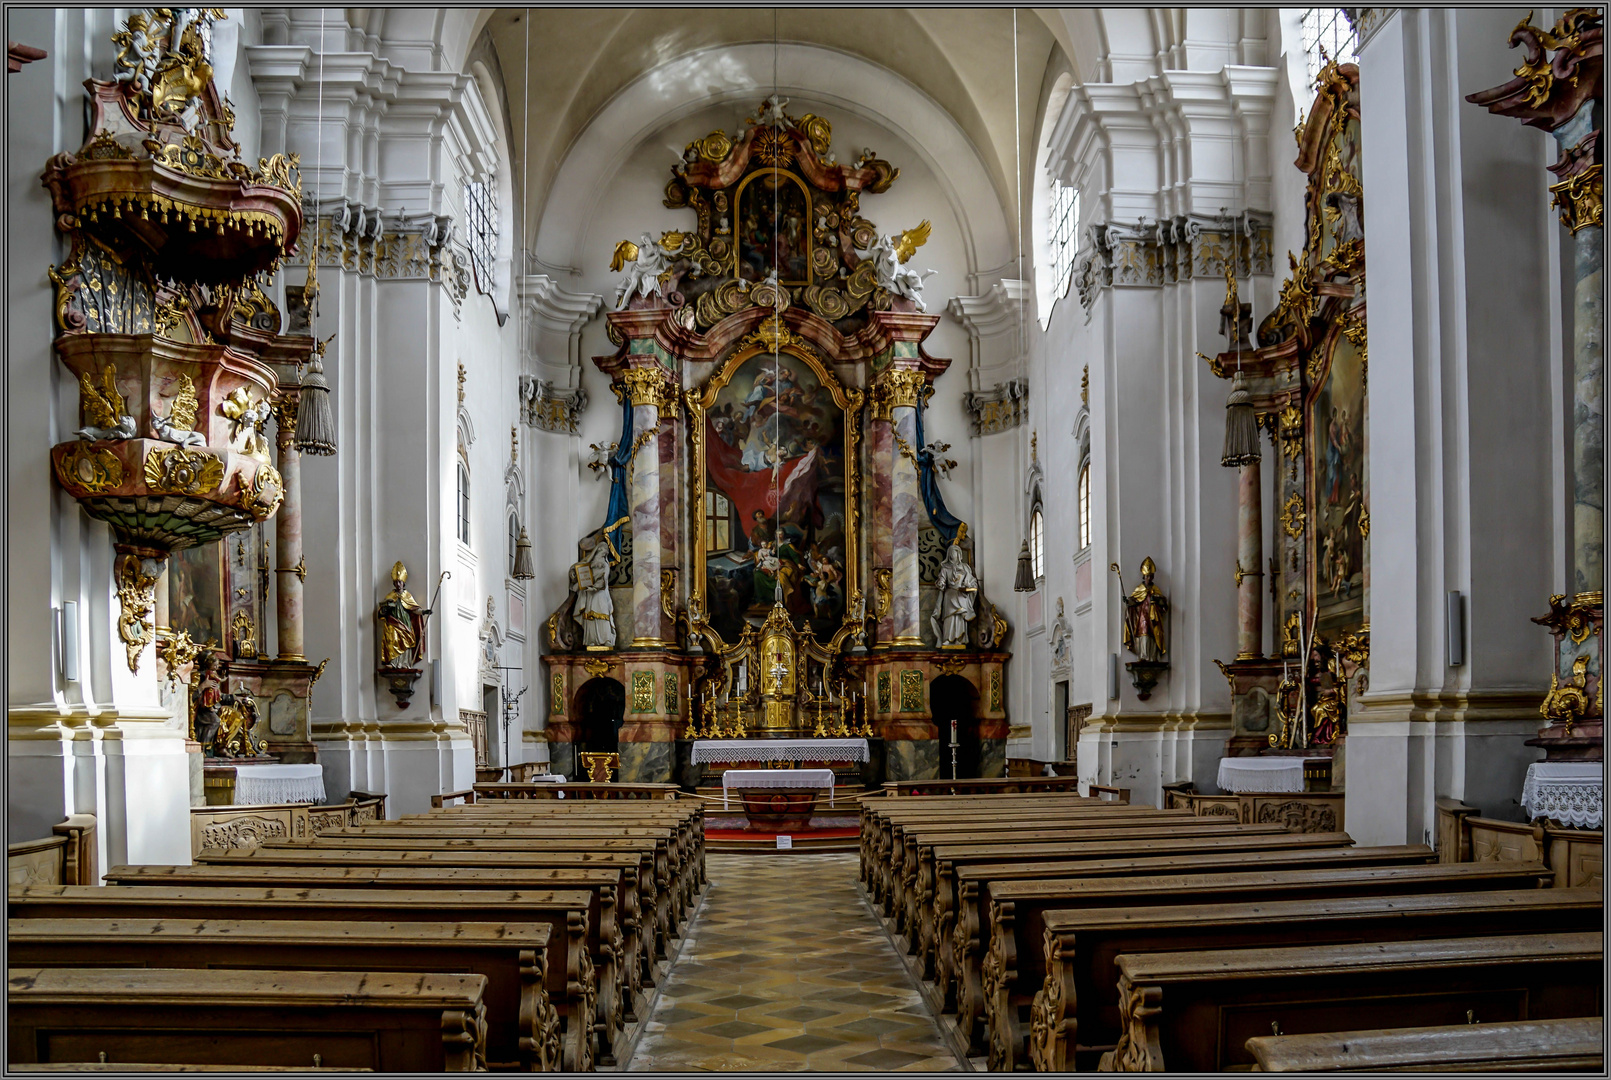 Heilig Geist Kirche St. Anna - Schongau / Oberbayern (1) 